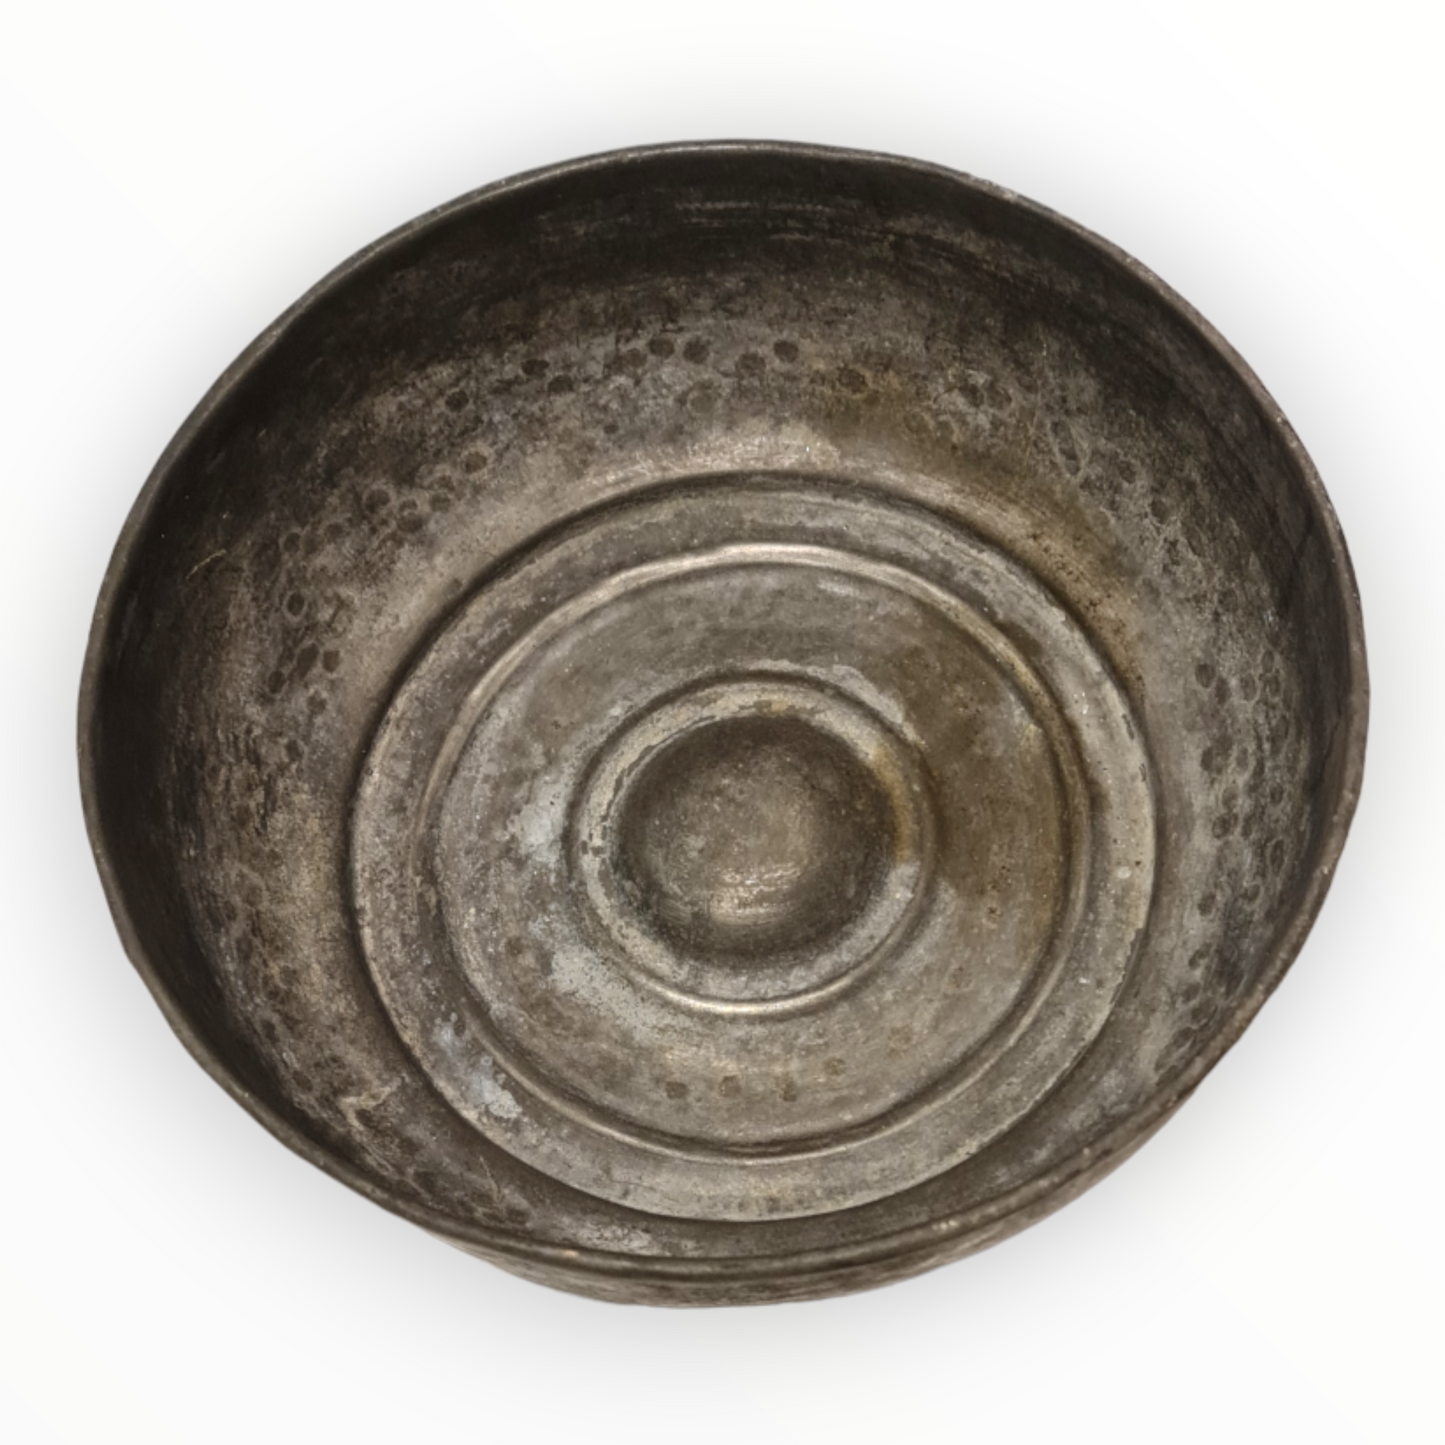 Antique Turkish Hammam Bowl - Turkish Bath Copper Bowl with Sand